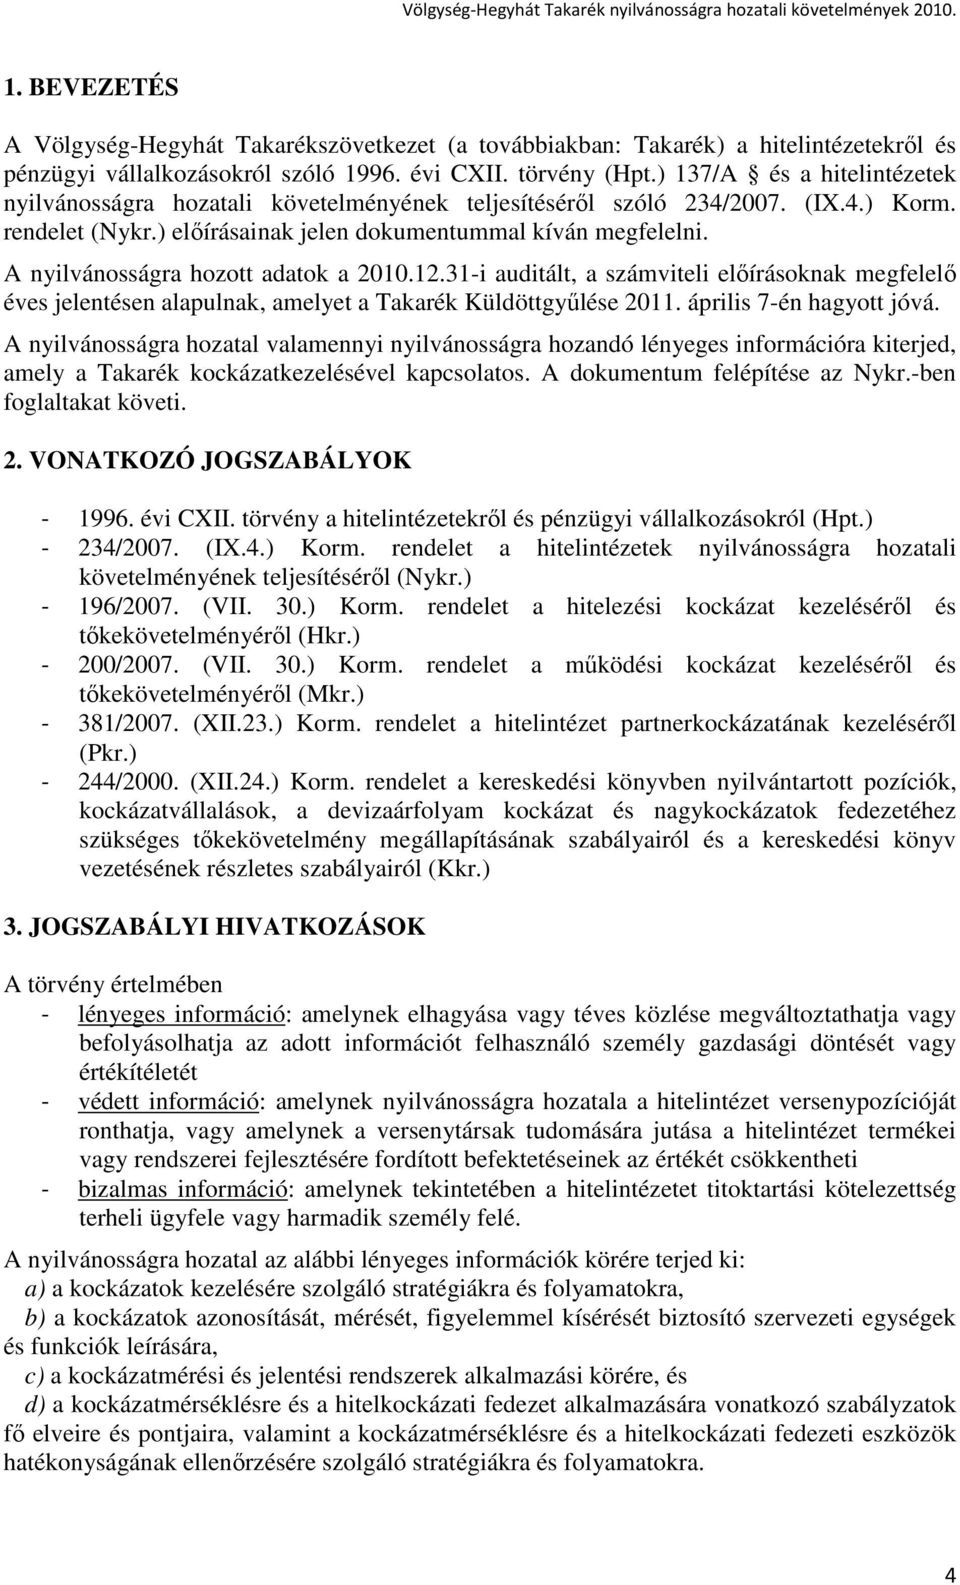 A nyilvánosságra hozott adatok a 2010.12.31-i auditált, a számviteli elıírásoknak megfelelı éves jelentésen alapulnak, amelyet a Takarék Küldöttgyőlése 2011. április 7-én hagyott jóvá.